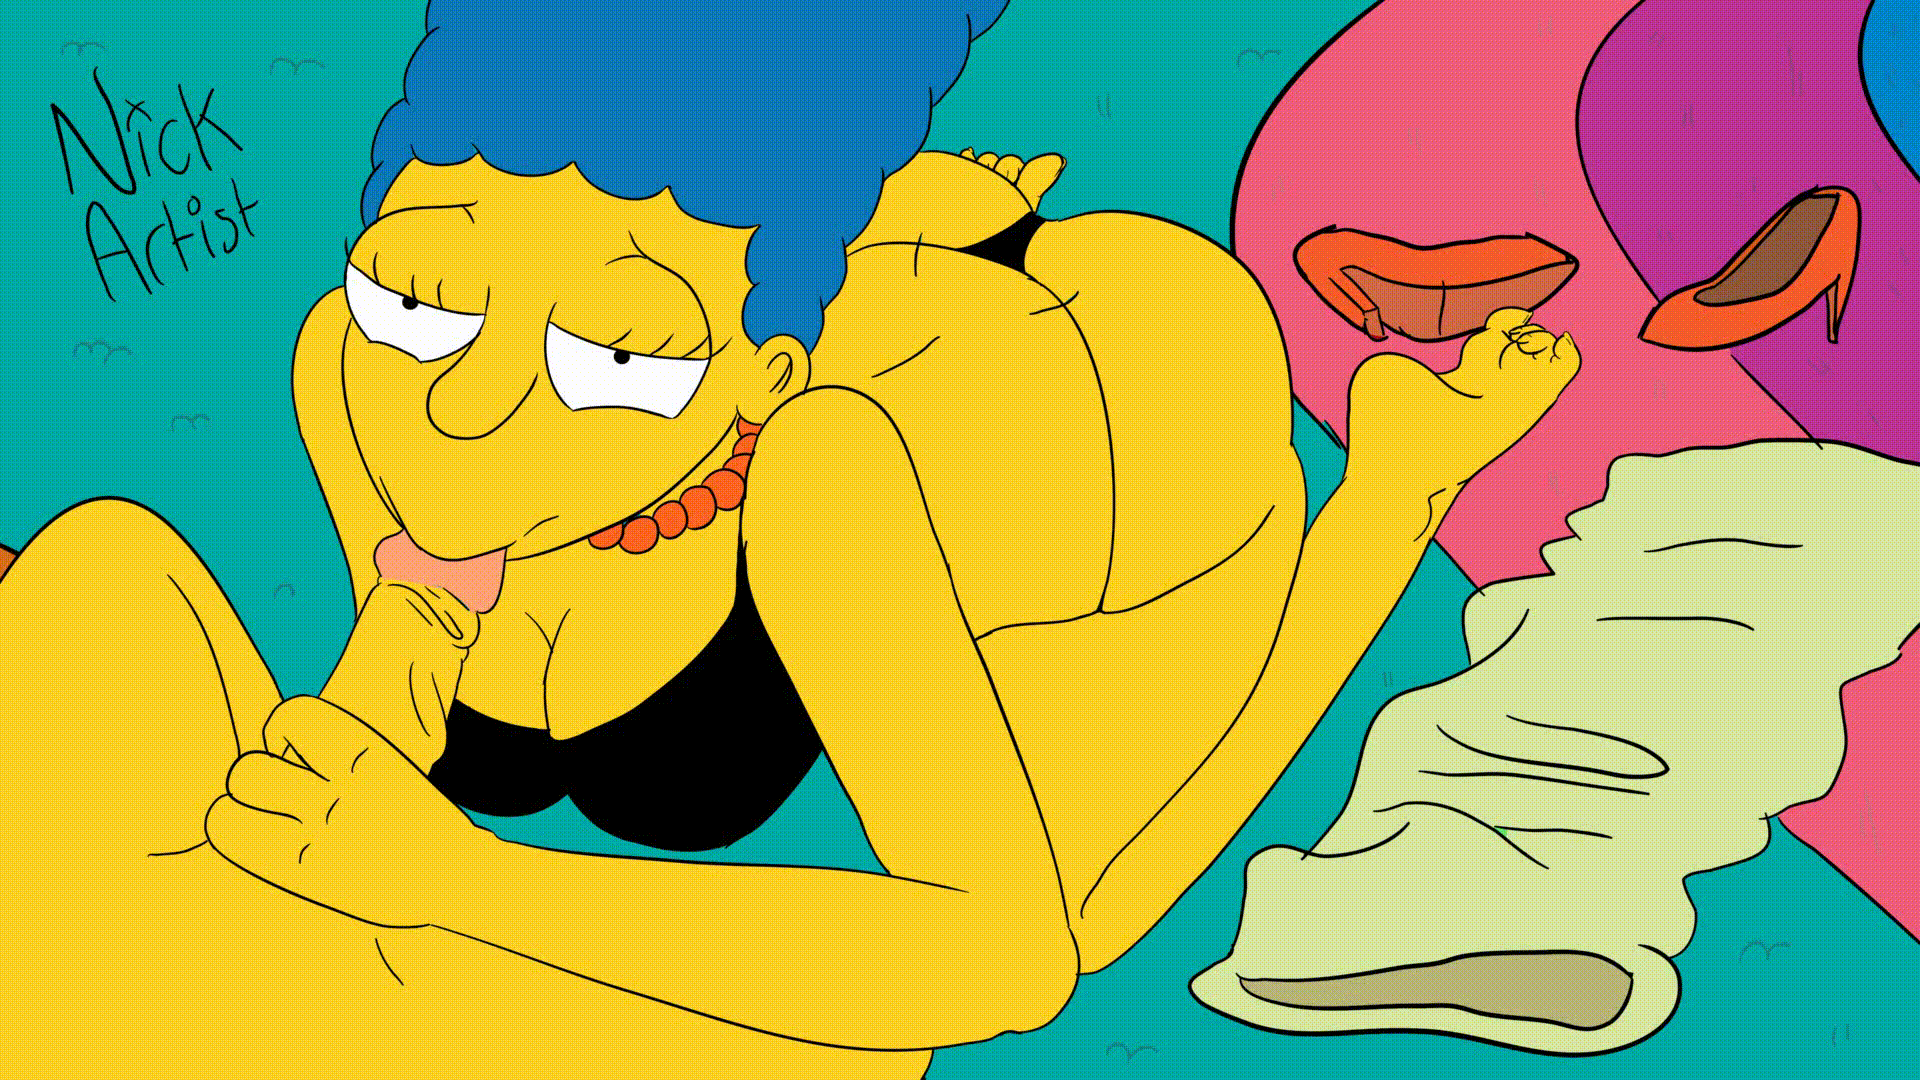 Marge simpson porn gif